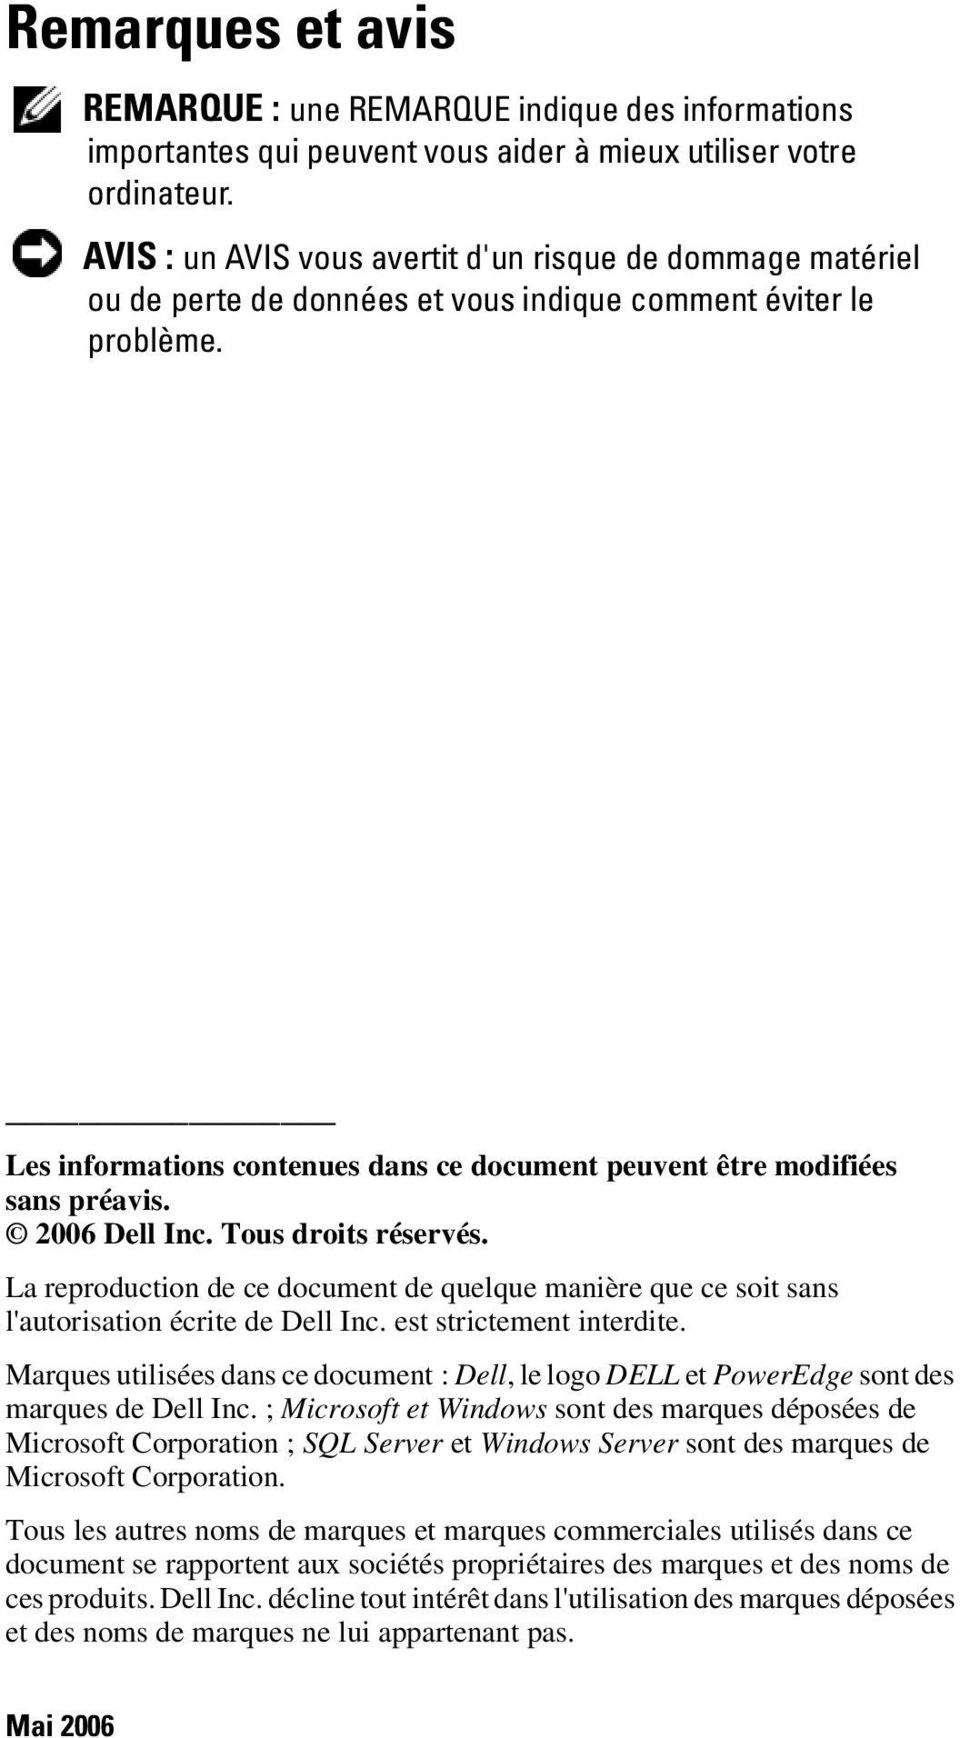 Les informations contenues dans ce document peuvent être modifiées sans préavis. 2006 Dell Inc. Tous droits réservés.